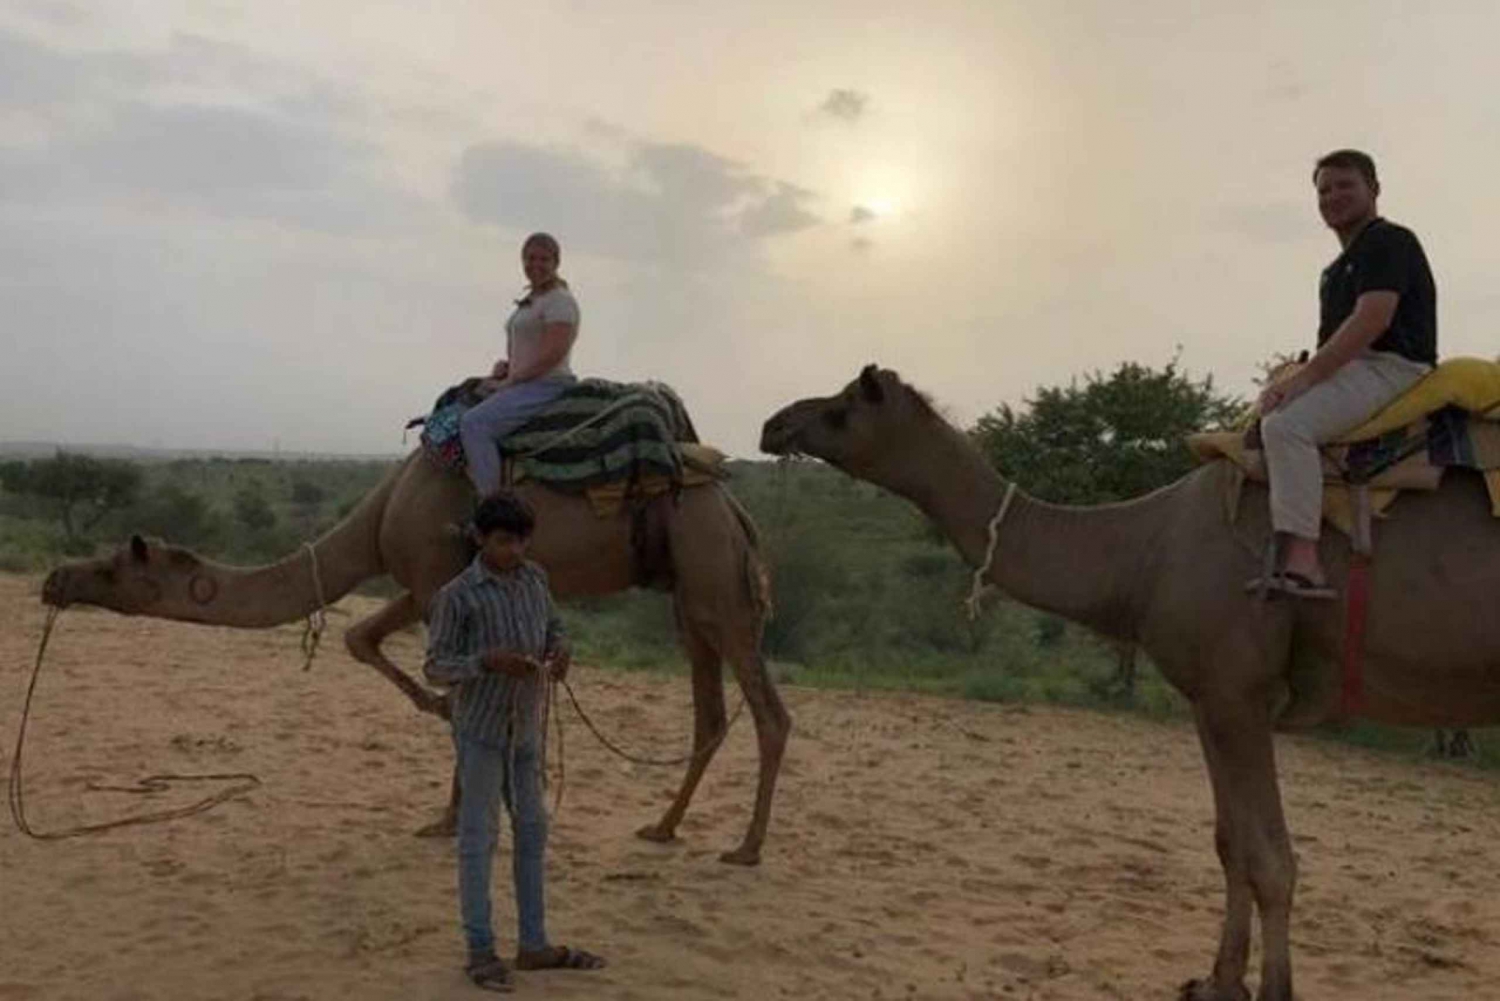 Excursión de un día en camello por el desierto de Jodhpur